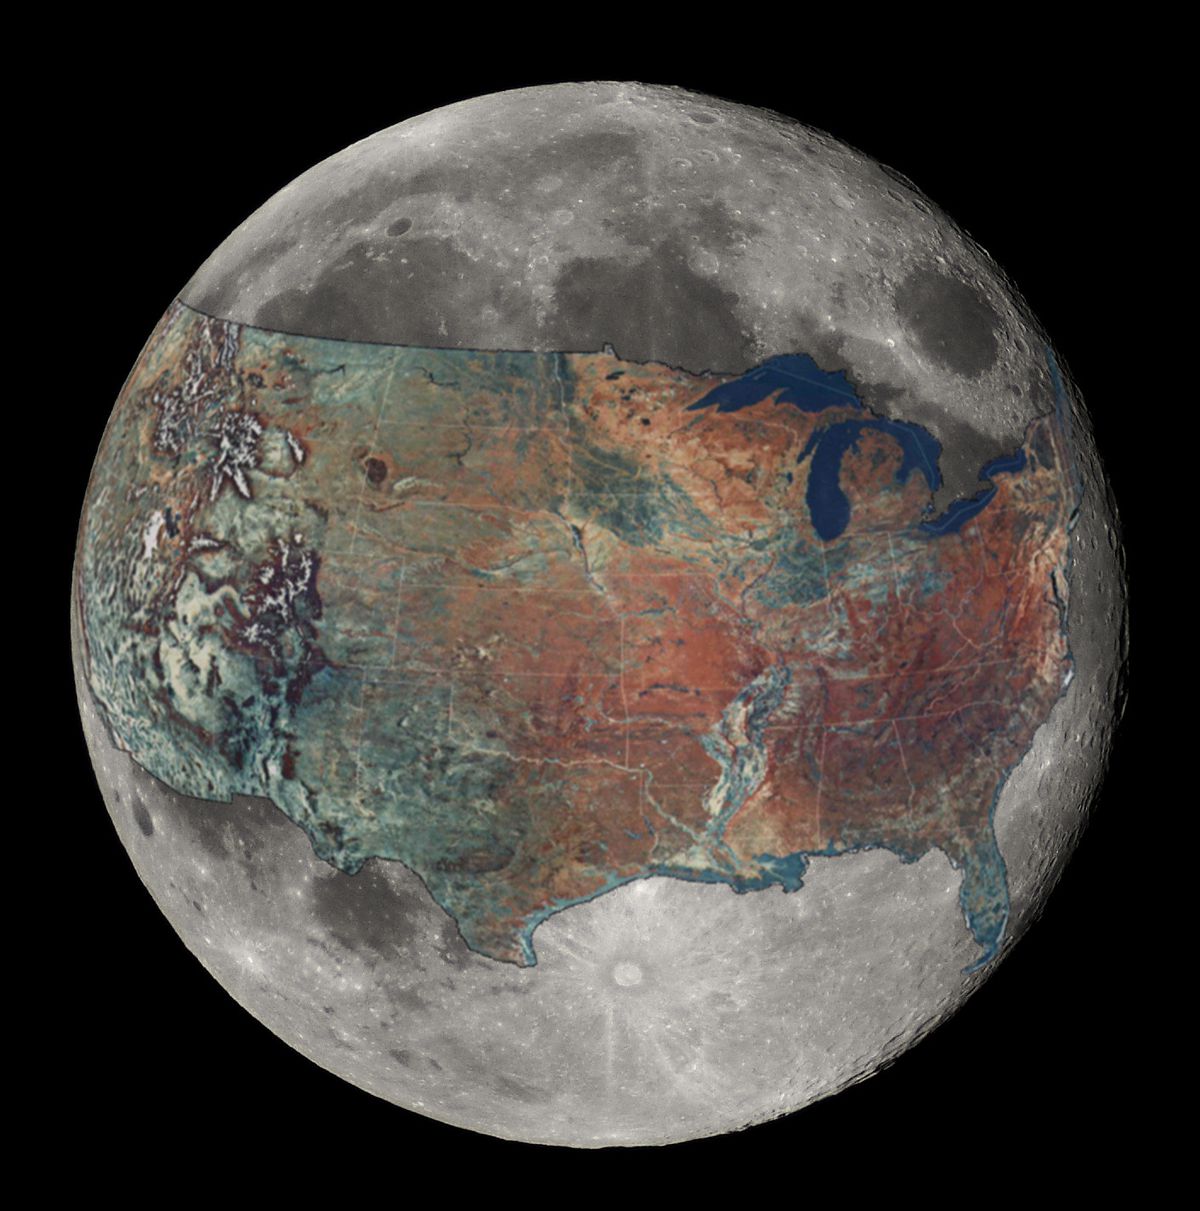 USA on the moon